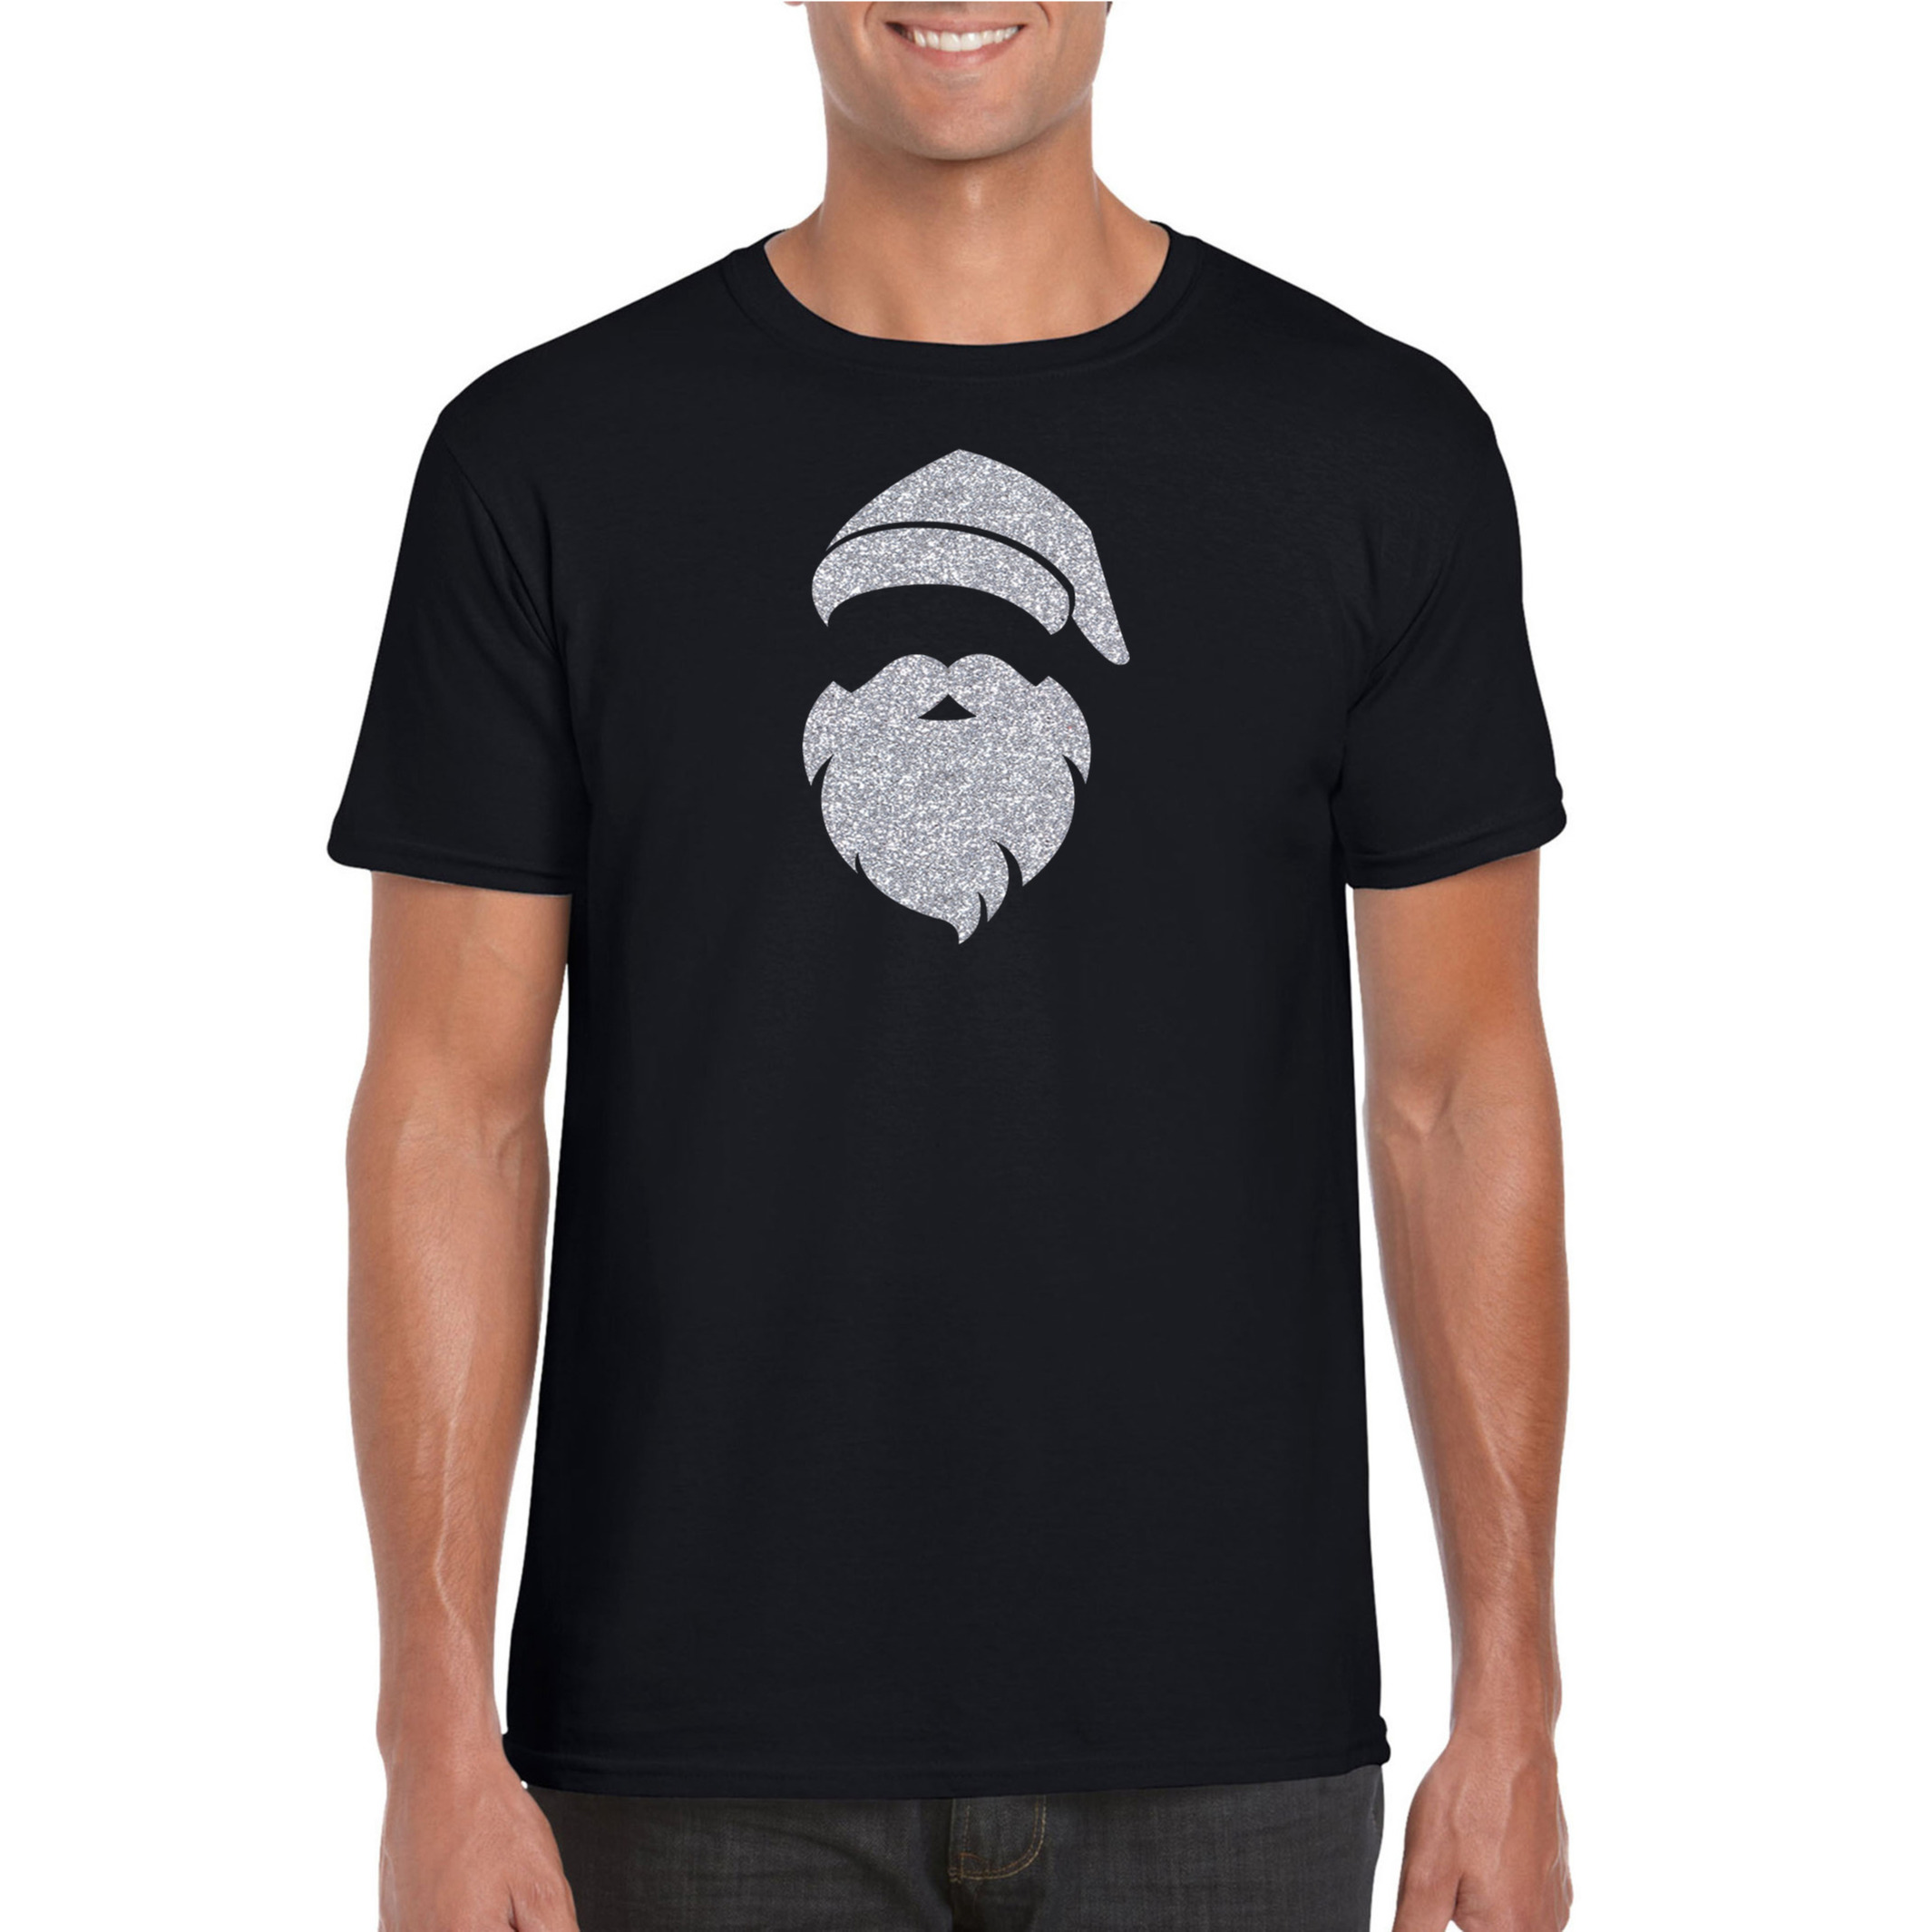 Kerstman hoofd Kerst t-shirt zwart voor heren met zilveren glitter bedrukking